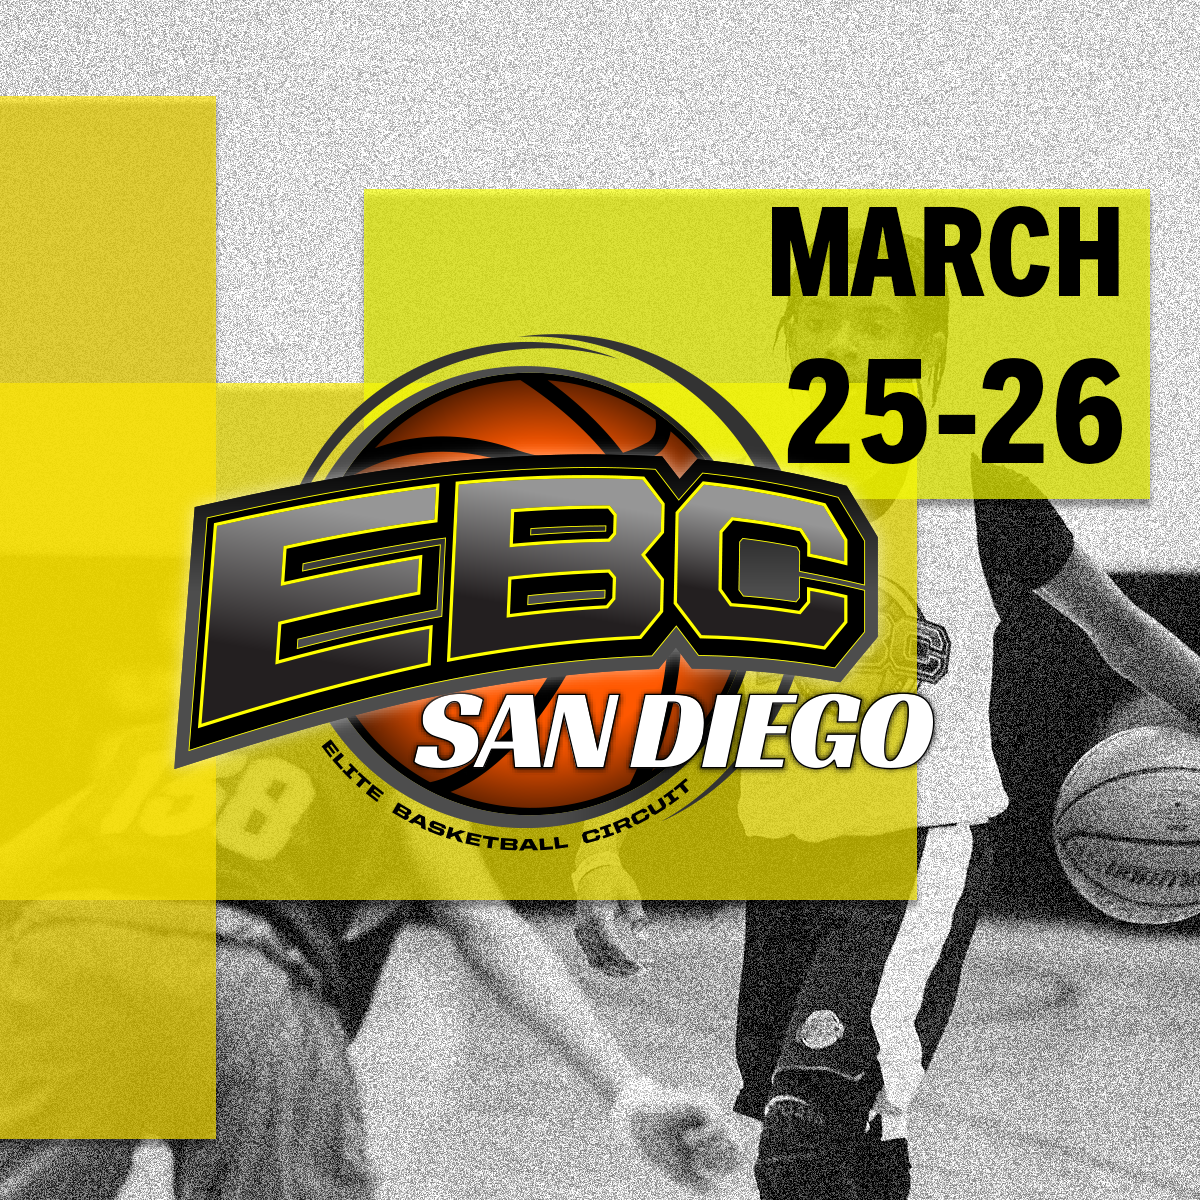 EBC San Diego, March 25-26